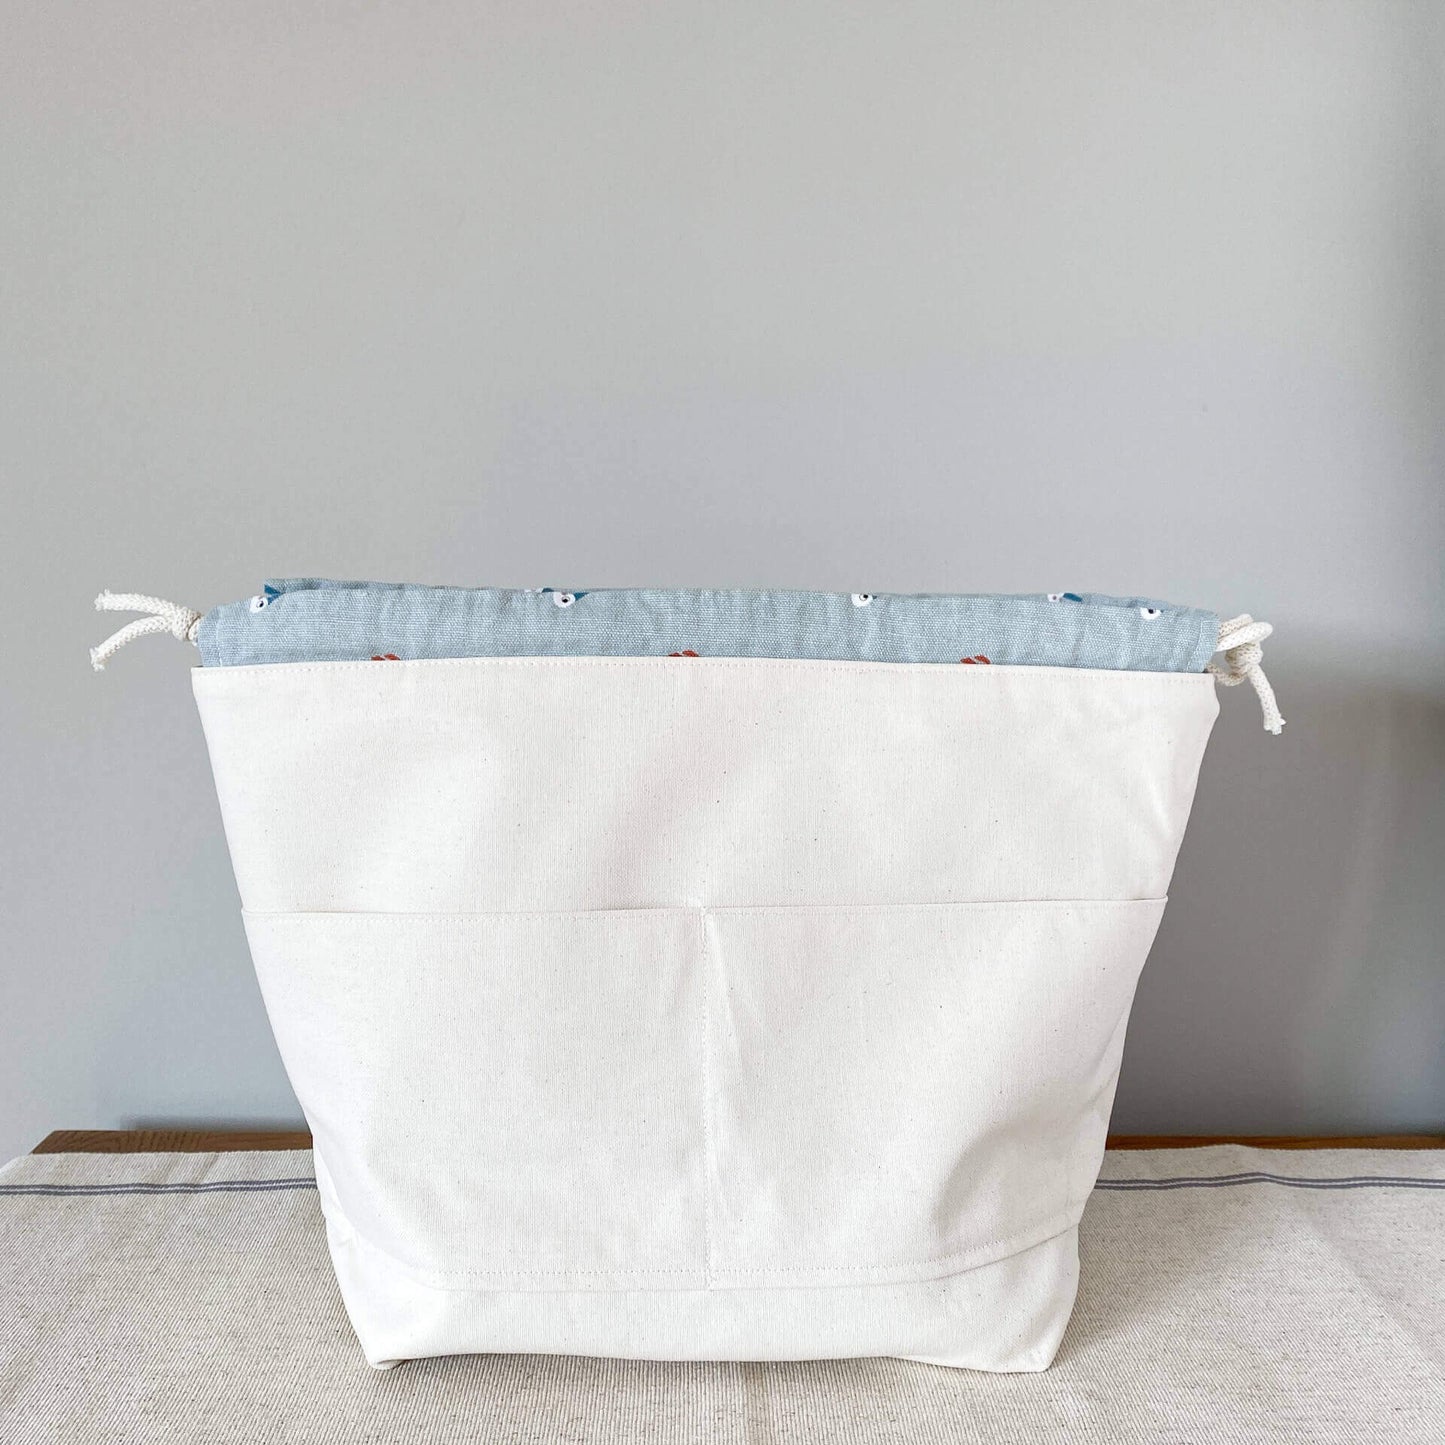 XL drawstring knitting project bag - Gardenia